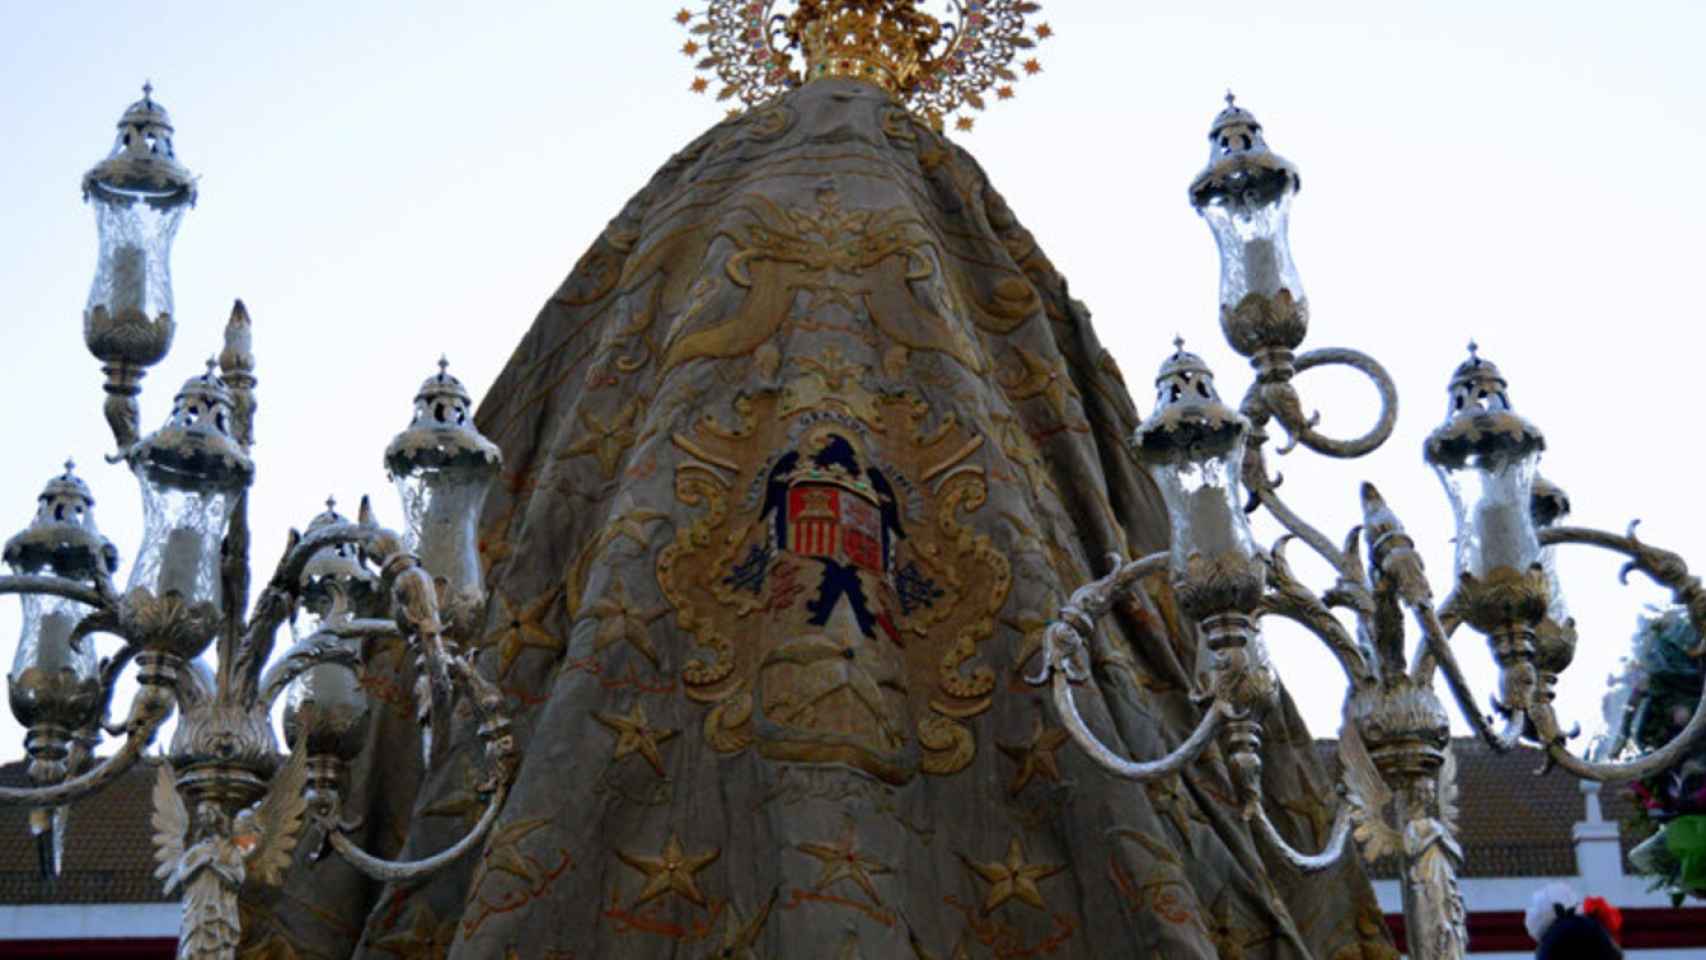 La virgen de Nuestra Señora de África patrona de la Ciudad de Ceuta en procesión el 5 de agosto.